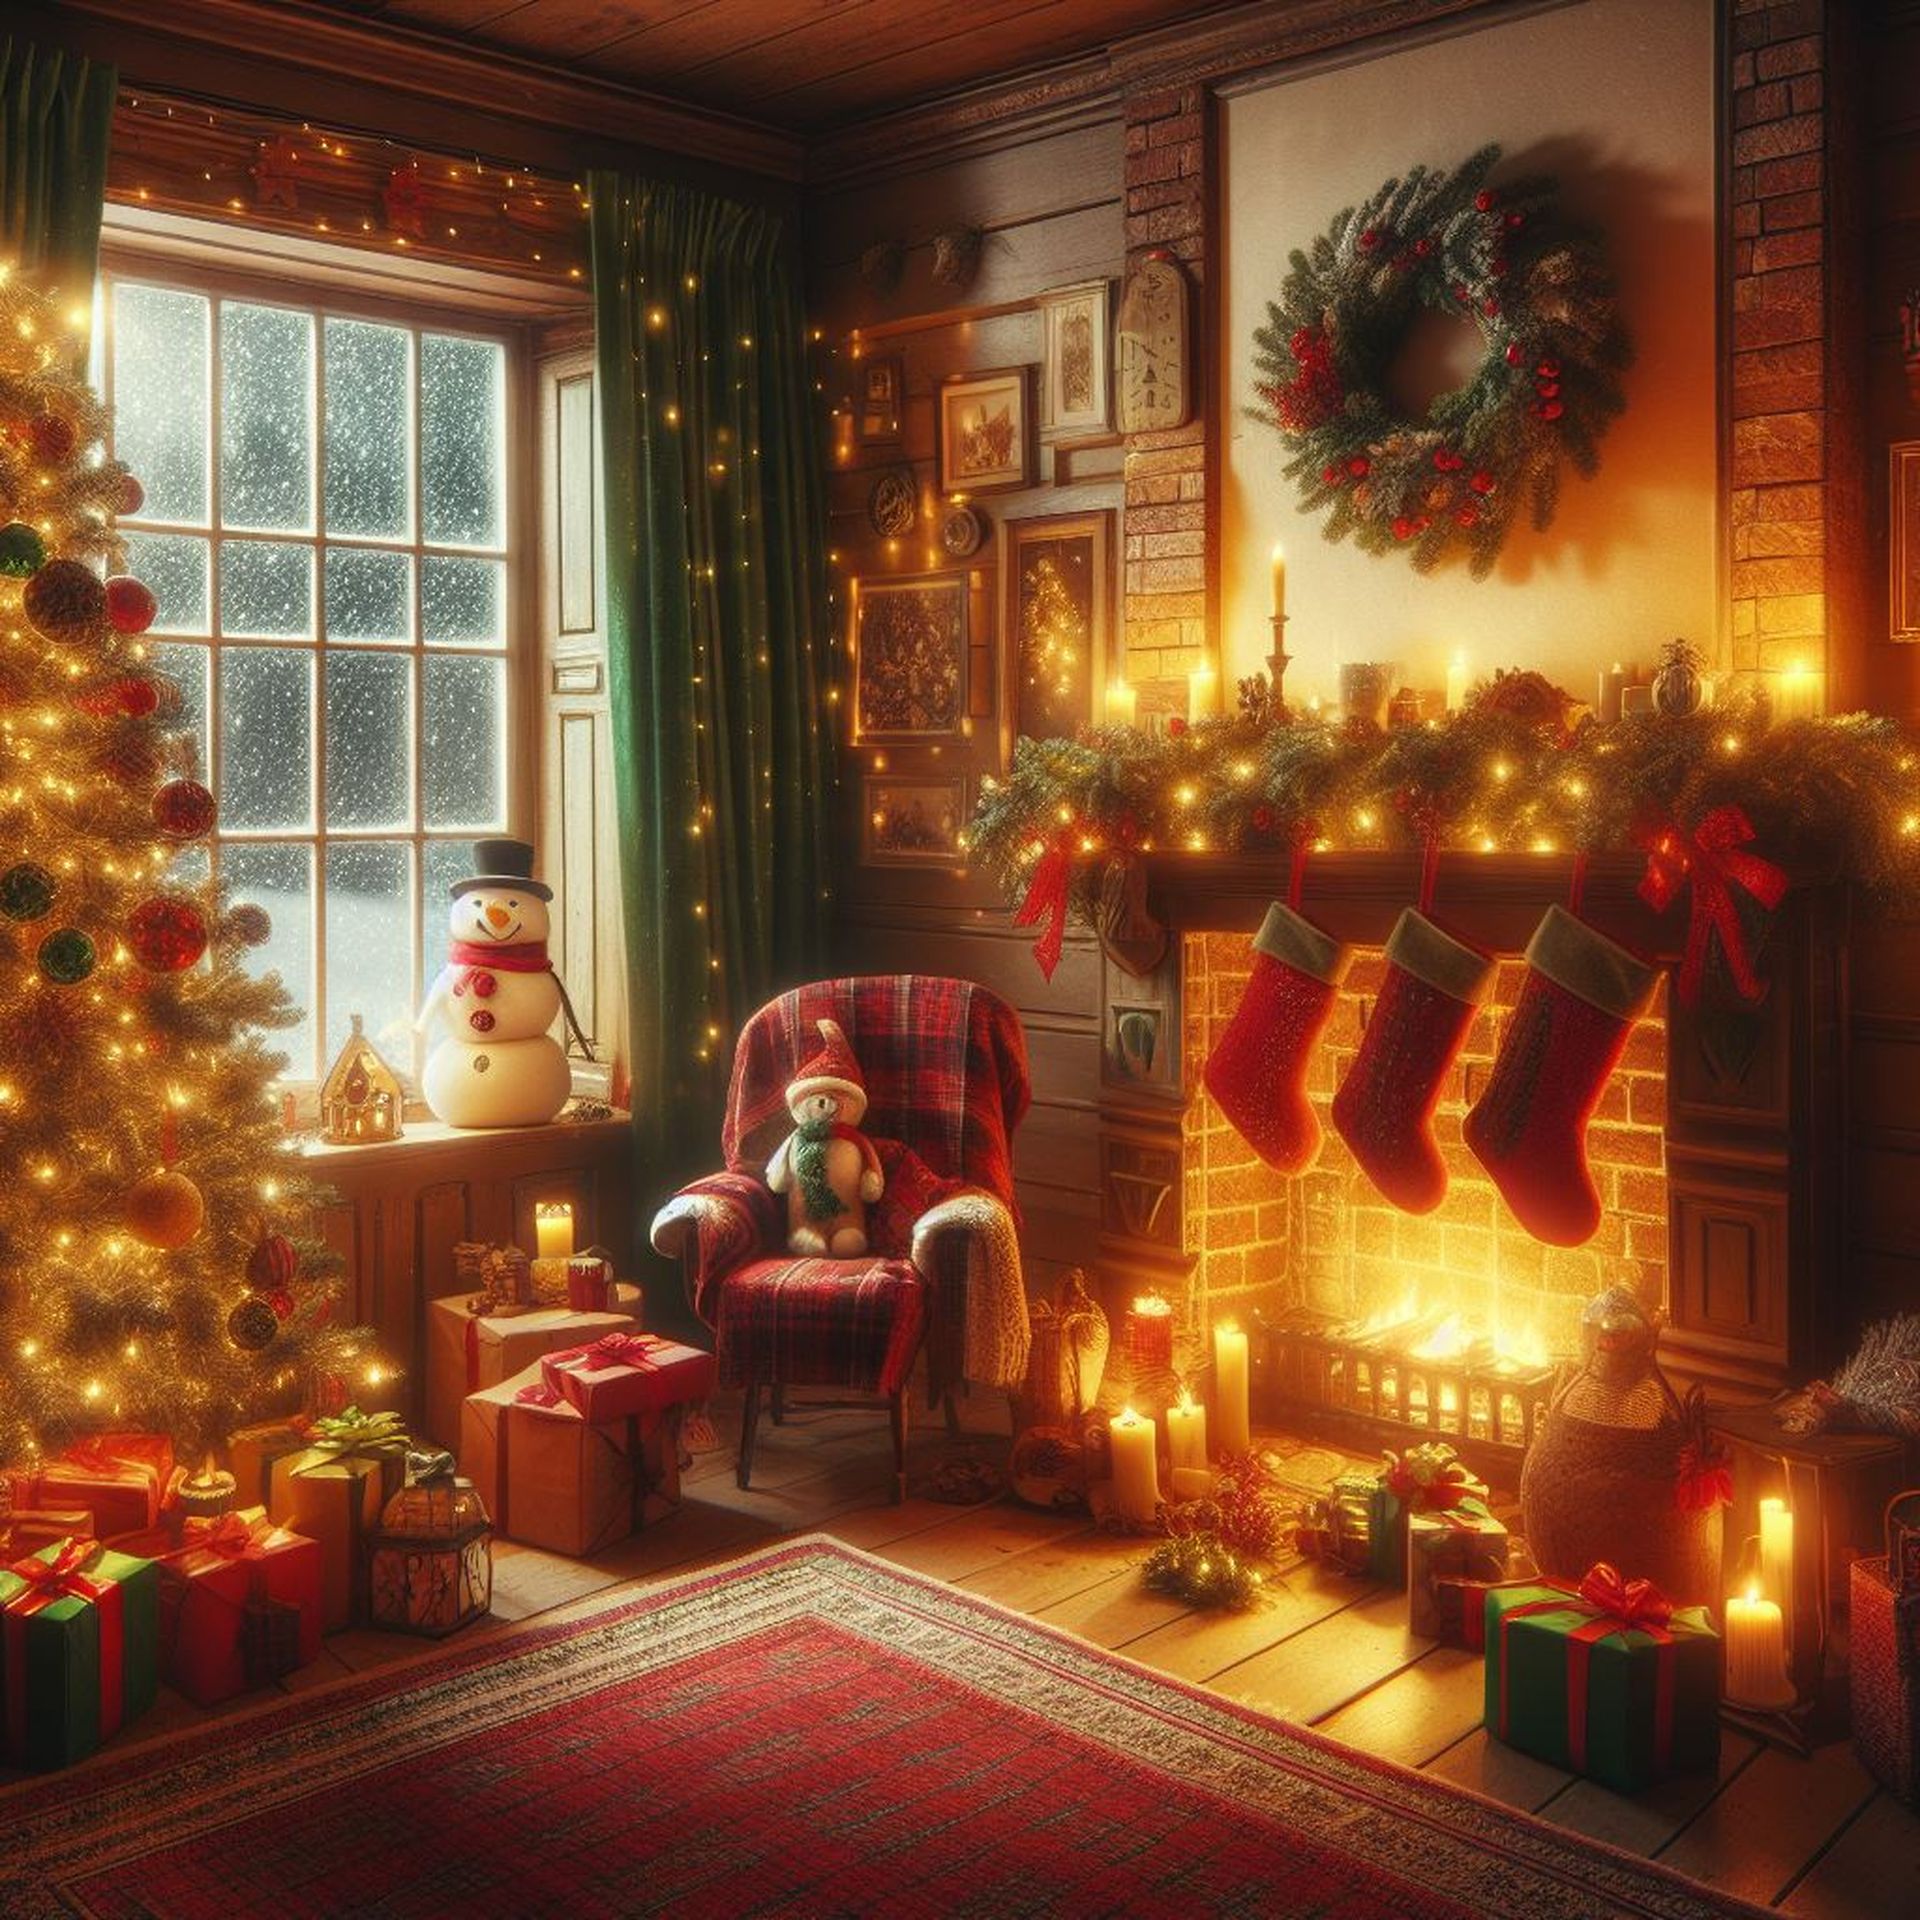 Trình tạo ảnh Giáng sinh AI tốt nhất: Nâng cấp ảnh kỳ nghỉ của bạn bằng nghệ thuật AI với DALL-E, Midjourney, Photoshop AI, v.v.